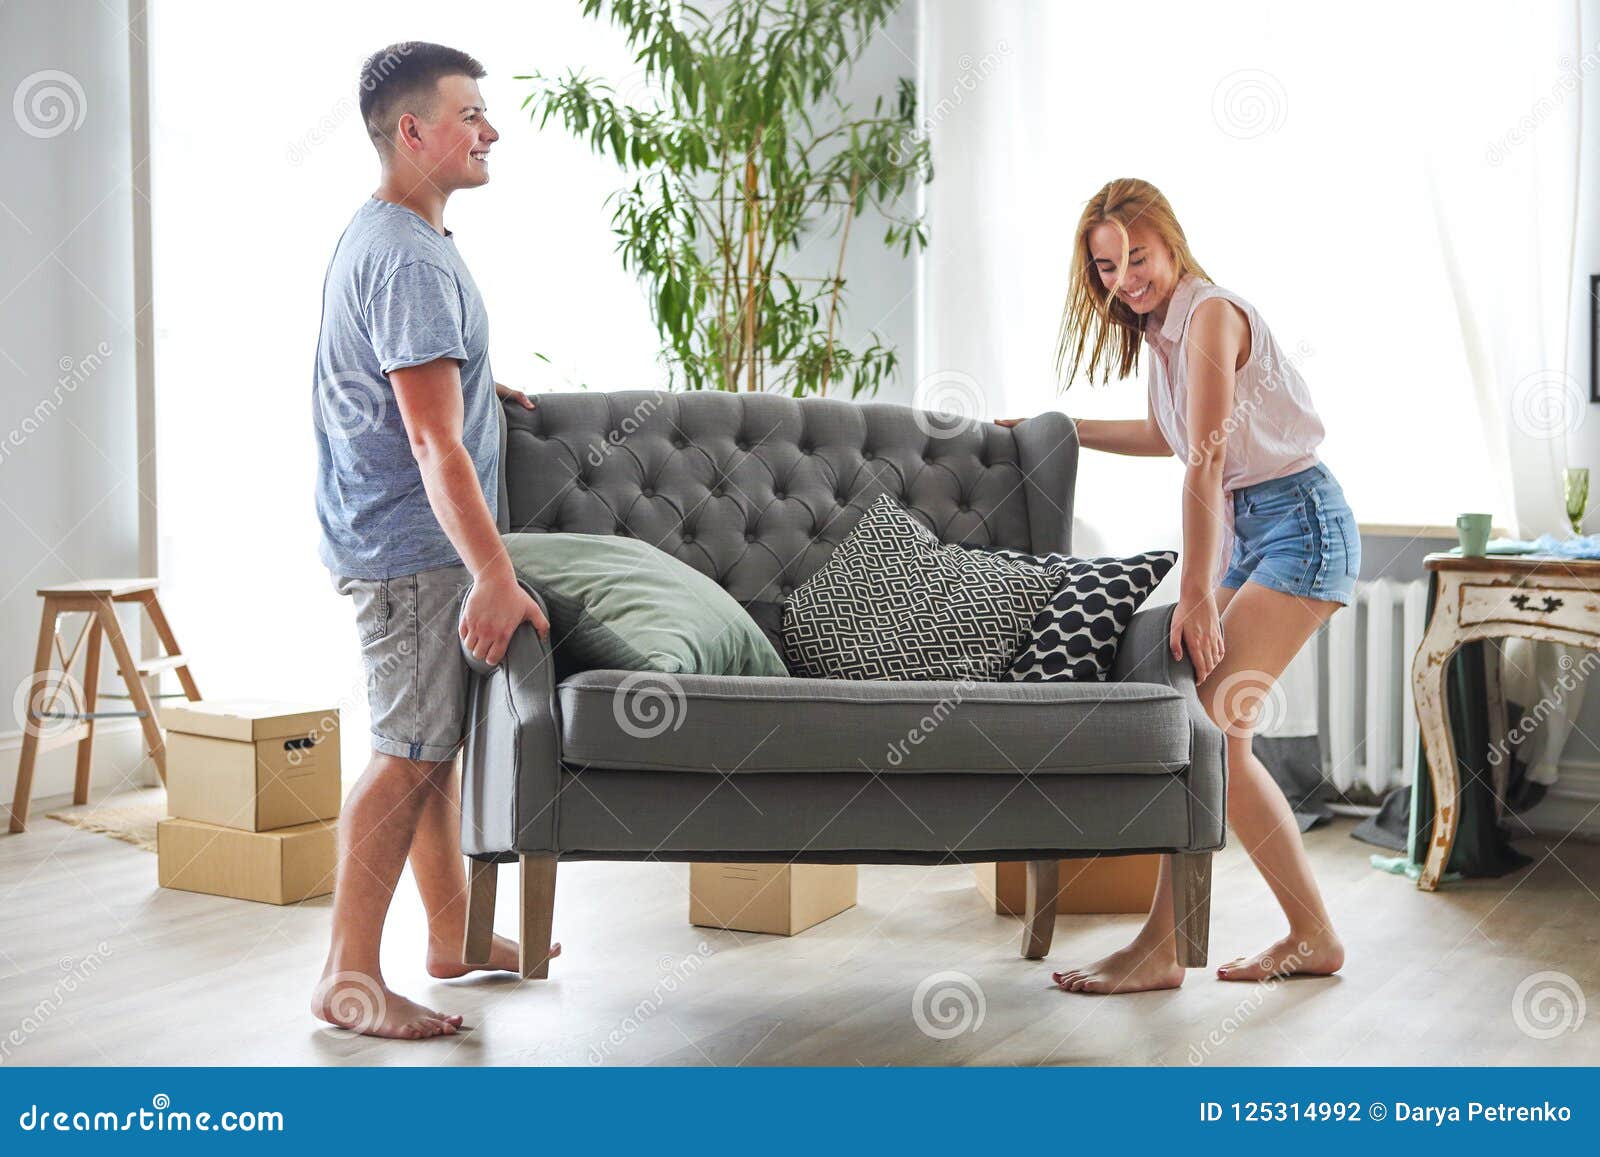 Отблагодарил соседку. Девушка двигает диван. Девушка двигает мебель. Порядок на диване. Девушка с трудом двигает диван.